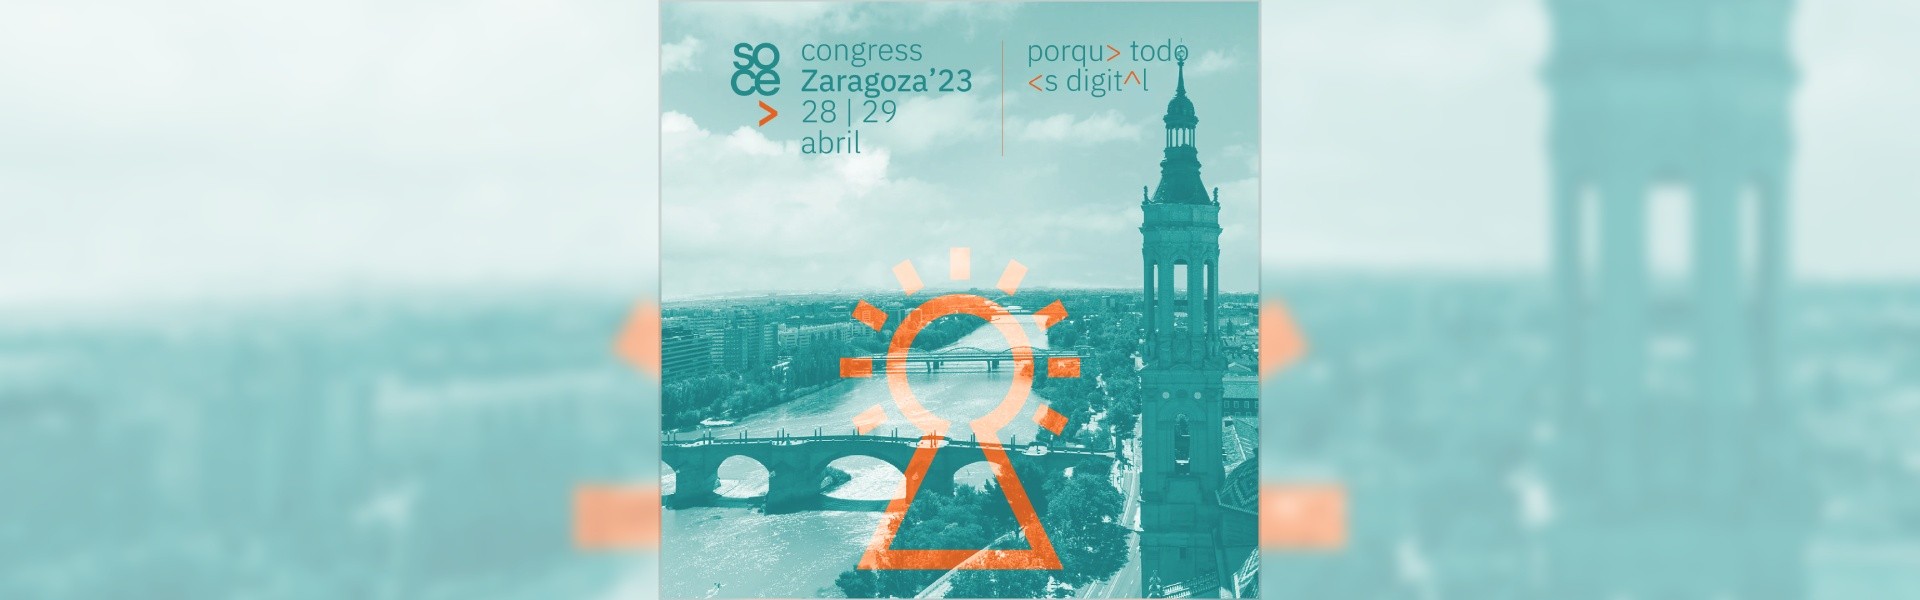 SOCE Congress Zaragoza 2023